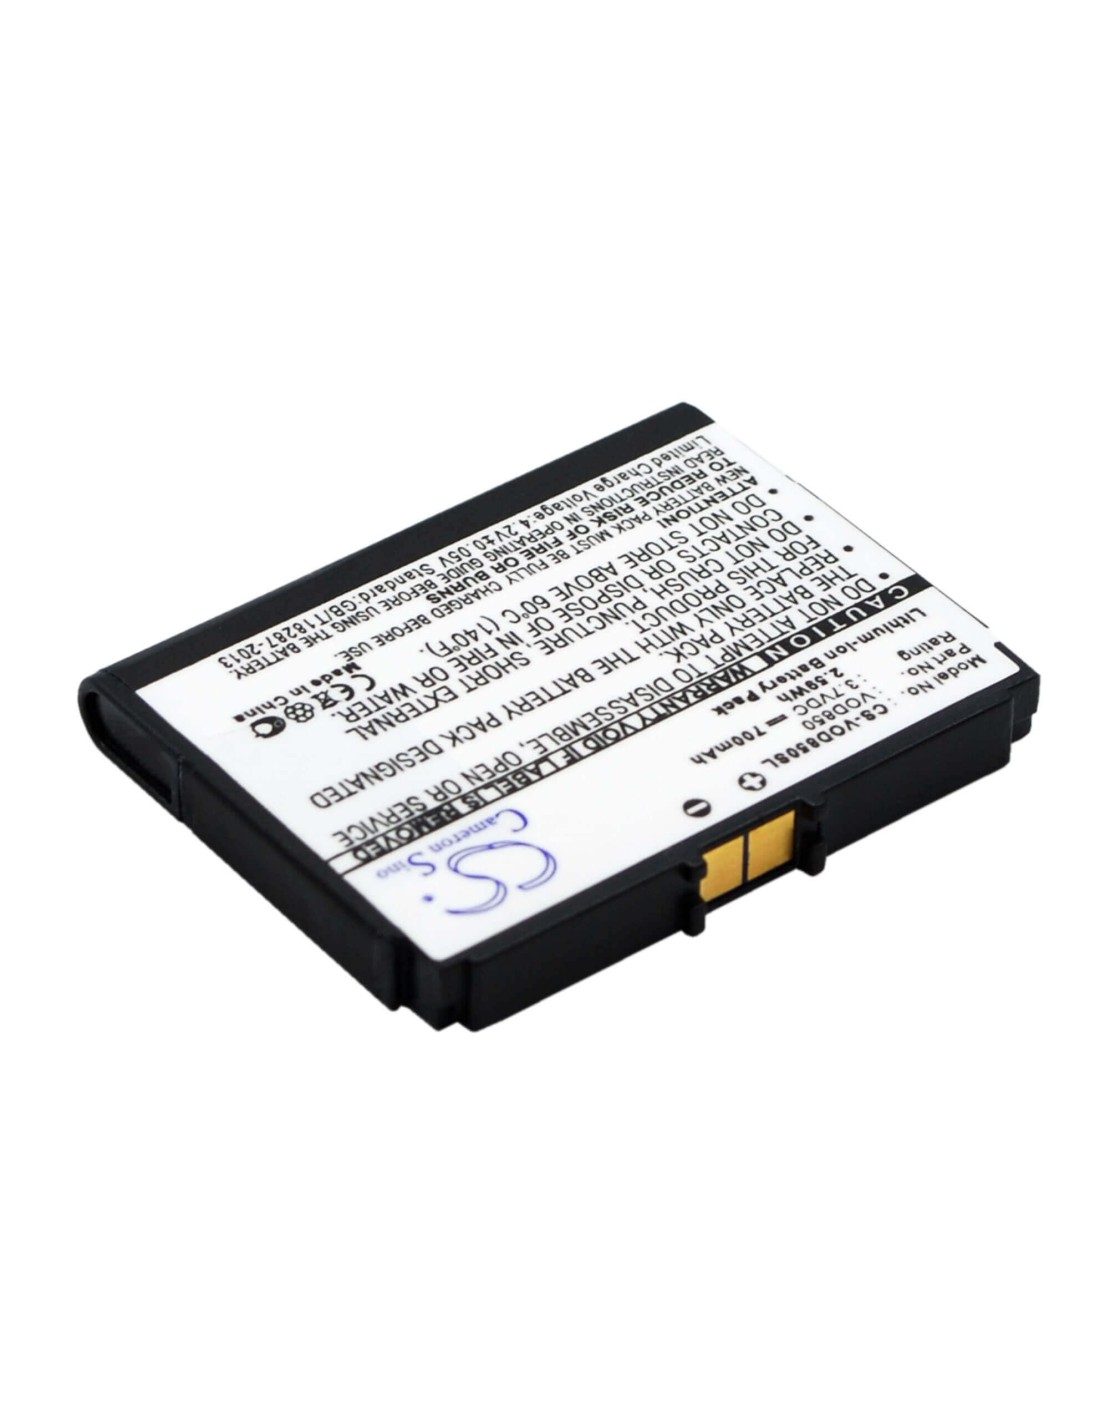 Battery for Vodafone 850, VF850 3.7V, 700mAh - 2.59Wh